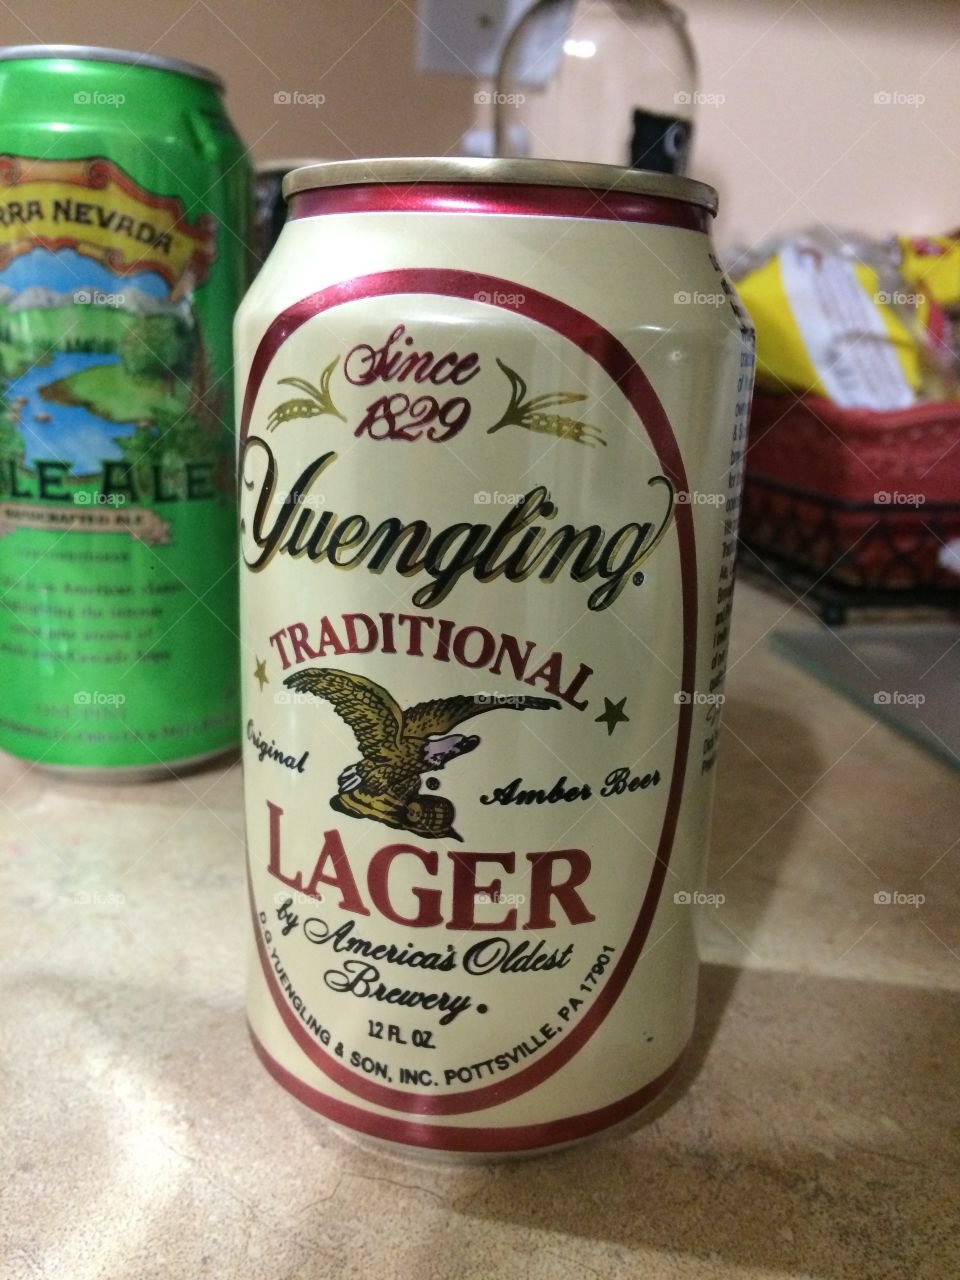 Yuengling beer! 